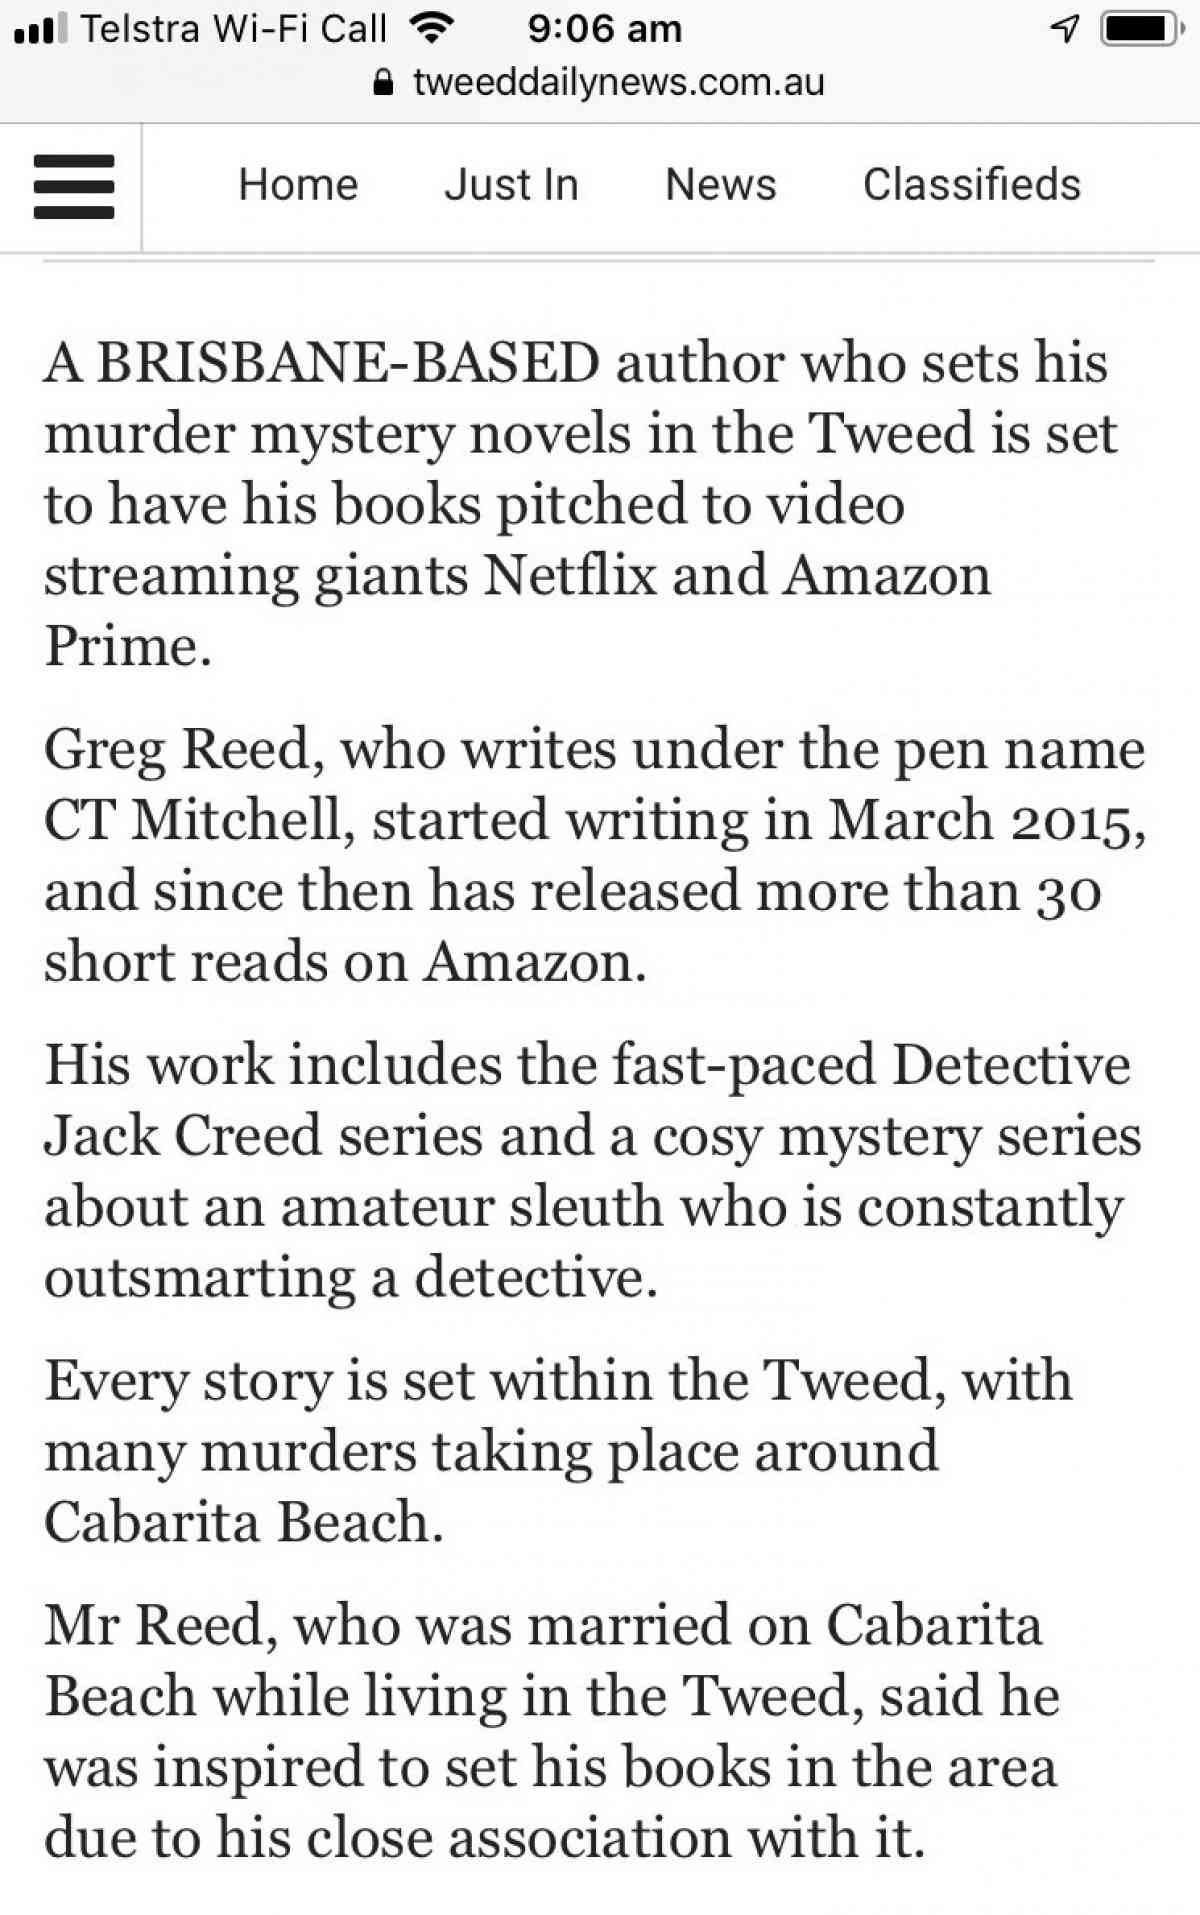 Murder-Secret-C.-T.-Mitchell-Featured-Tweeddailynews.Com.Au-Austin-Macauley-Publishers